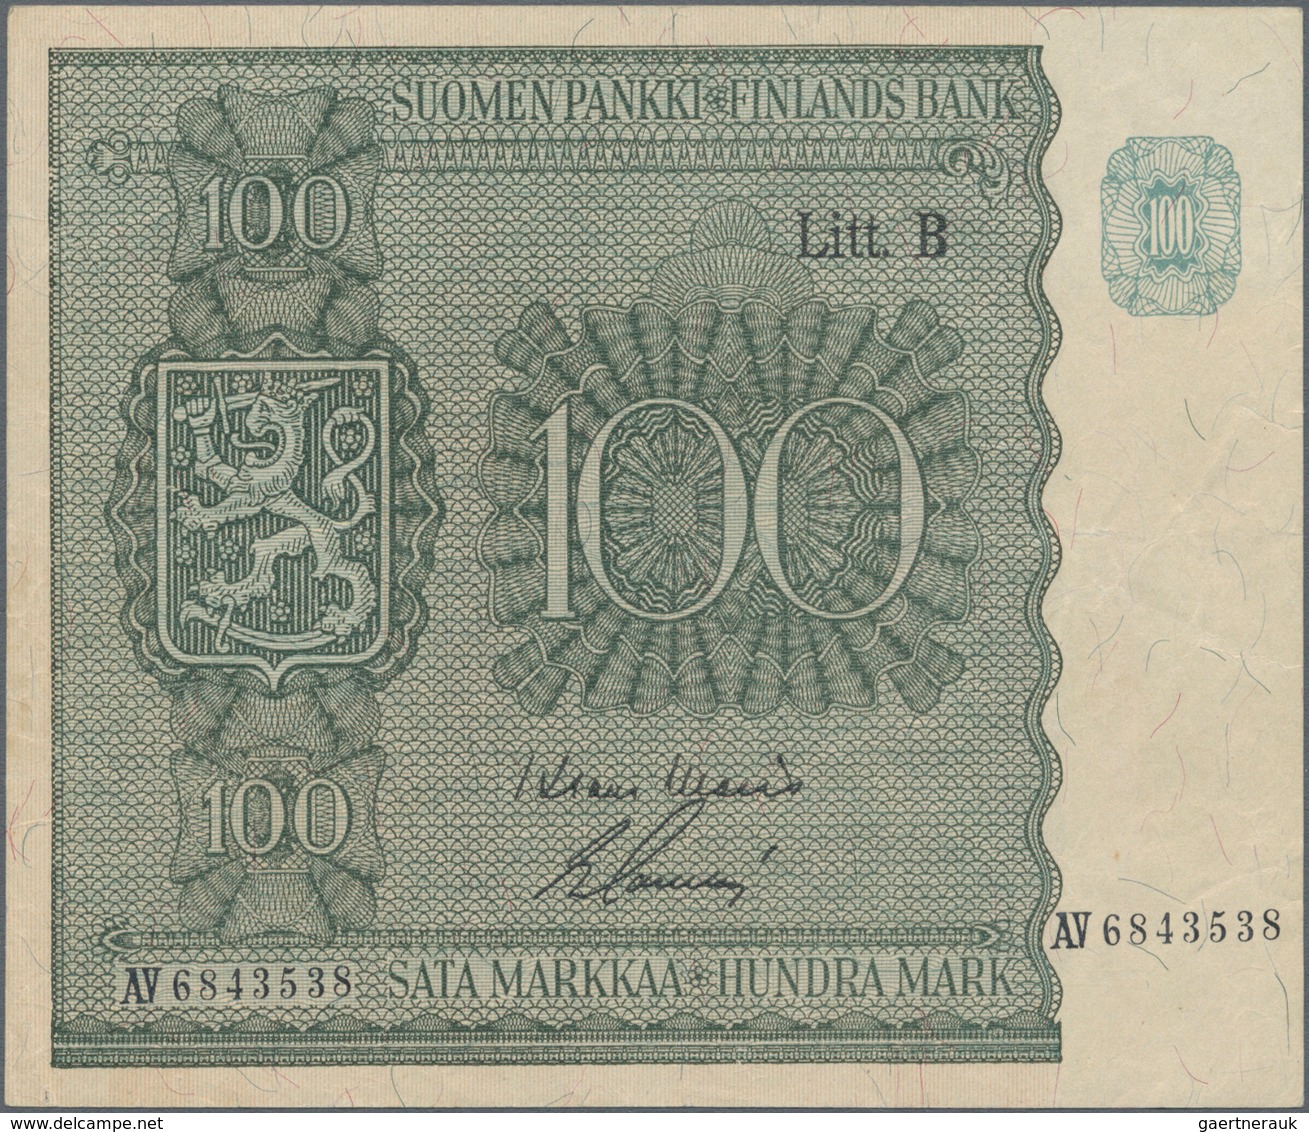 Finland / Finnland: Pair With 100 Markkaa 1945 Litt.B, P.88 (VF) And 500 Markkaa 1975 P.110 (VF). (2 - Finnland